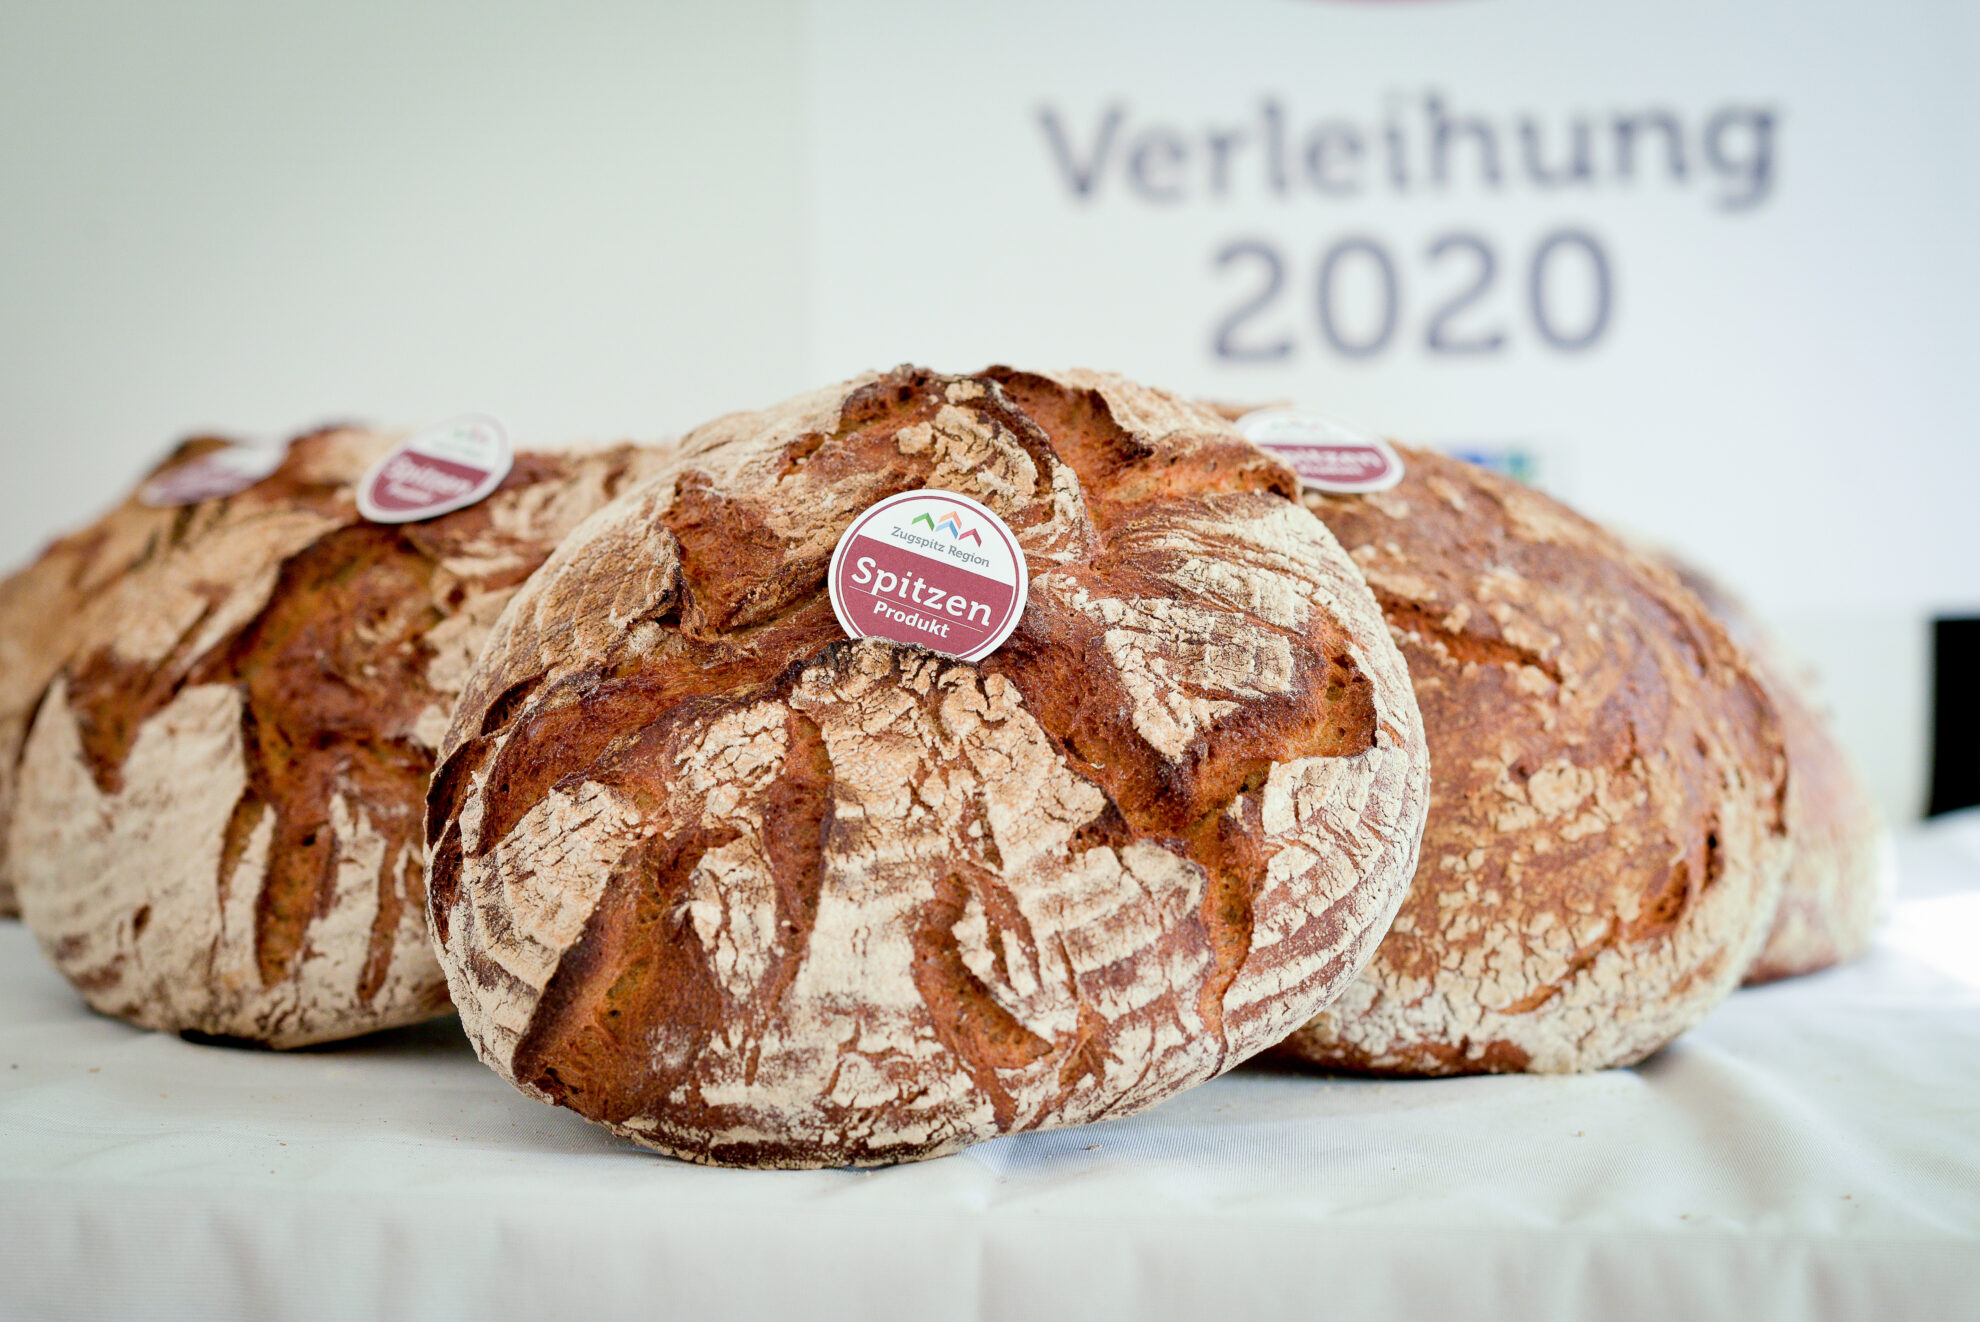 Zugspitz Regions Brot Verleihung